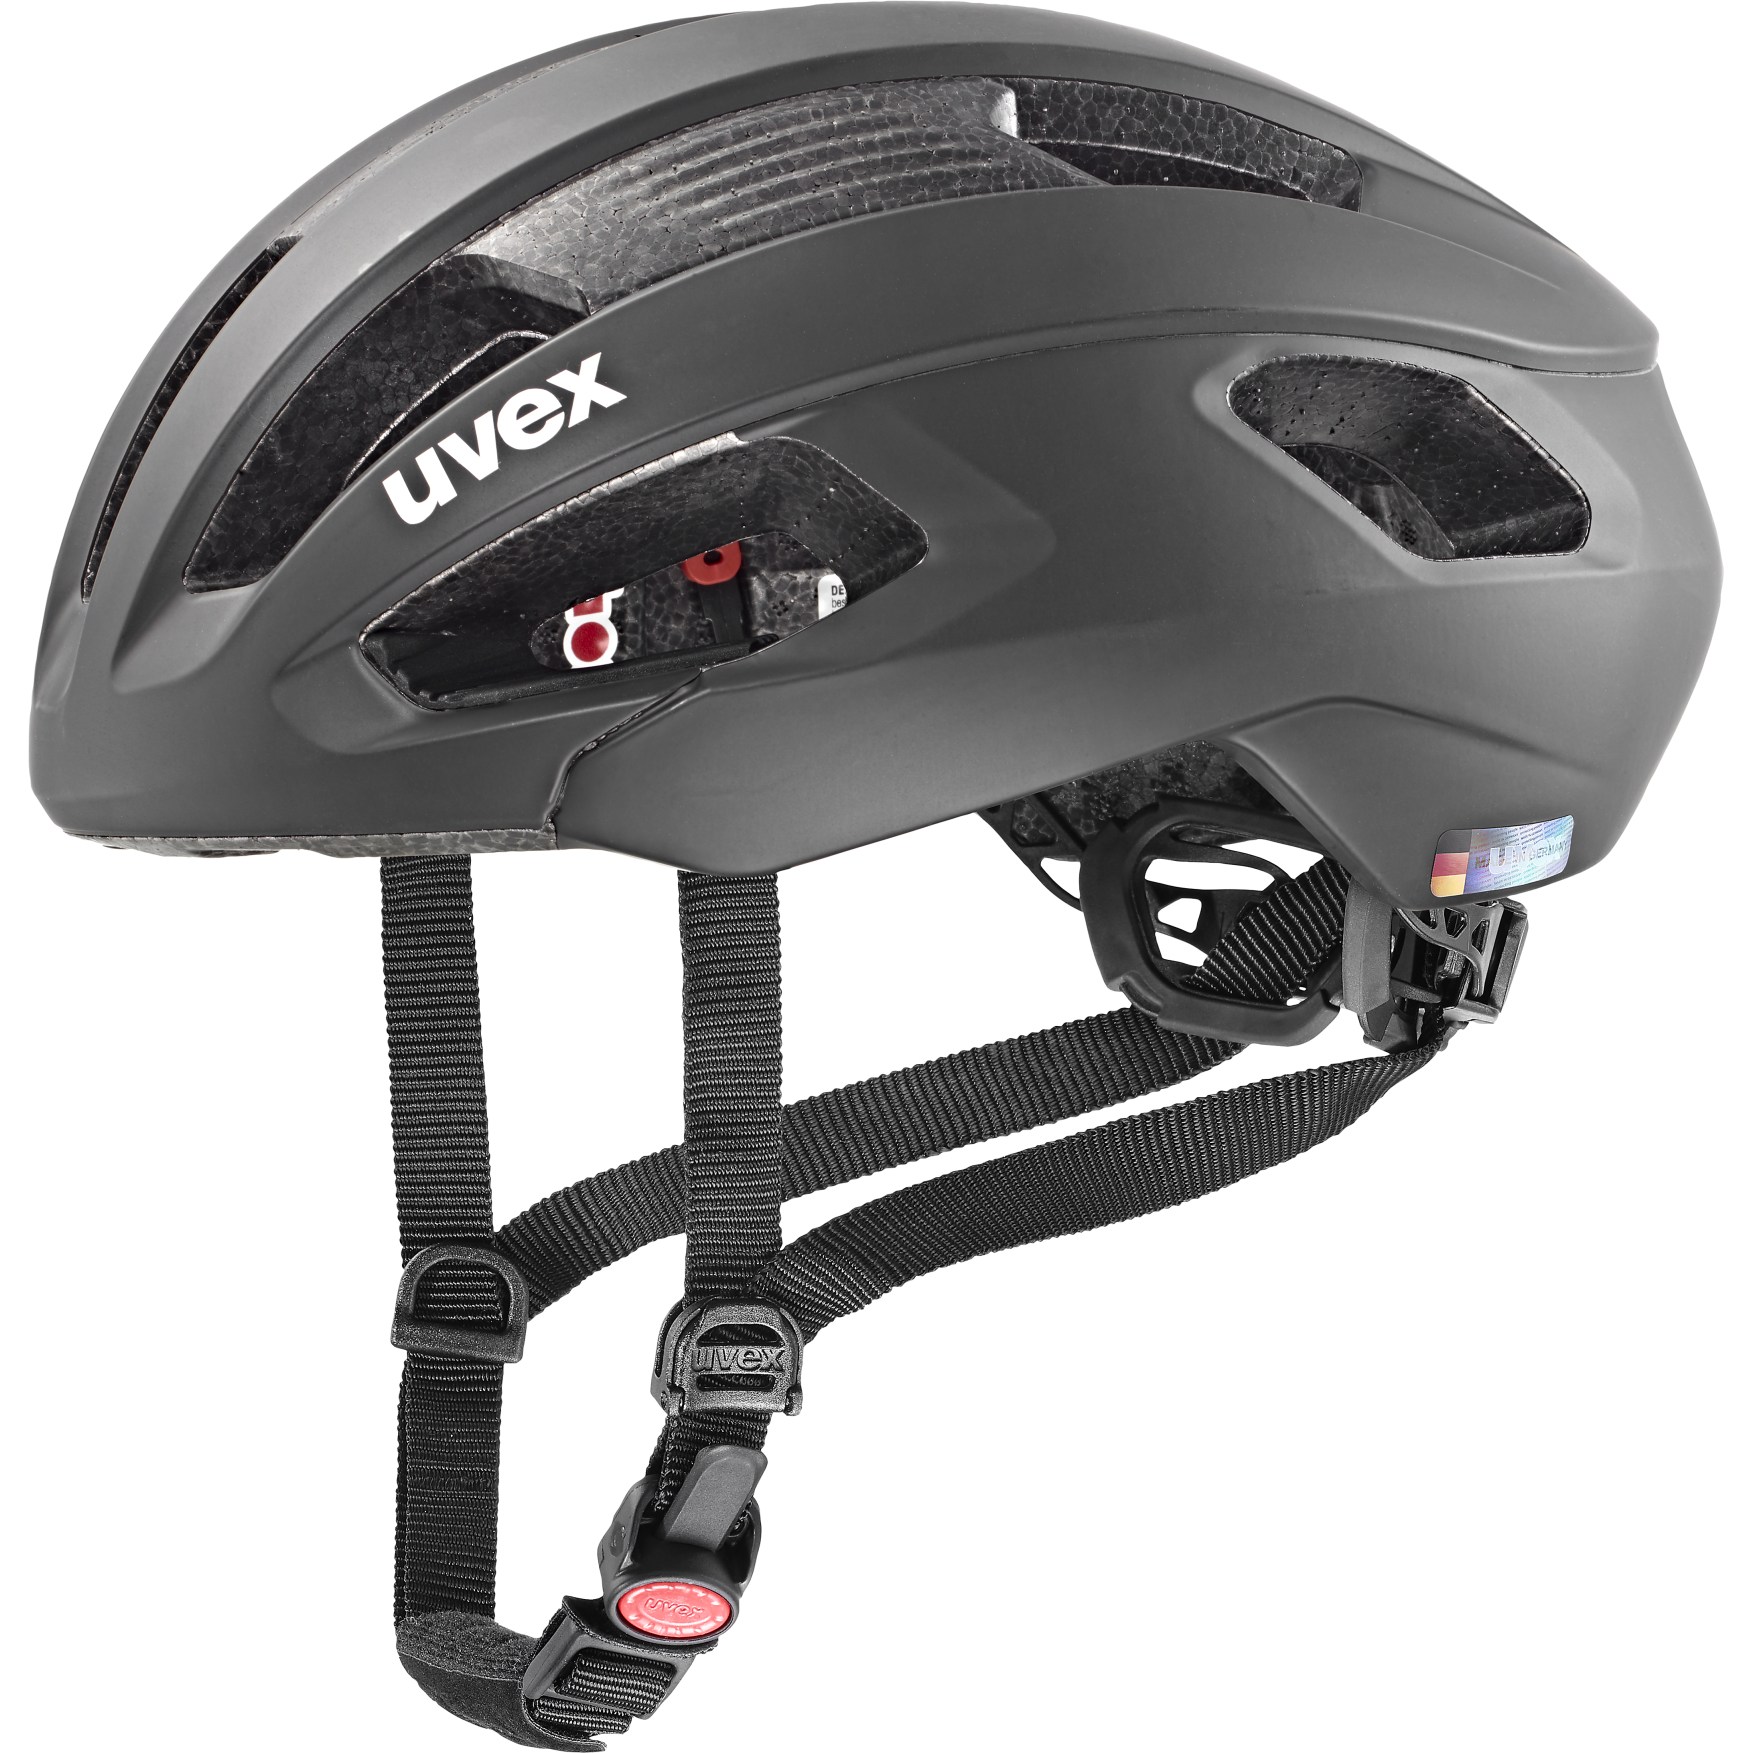 Produktbild von Uvex rise cc Helm - all black matt